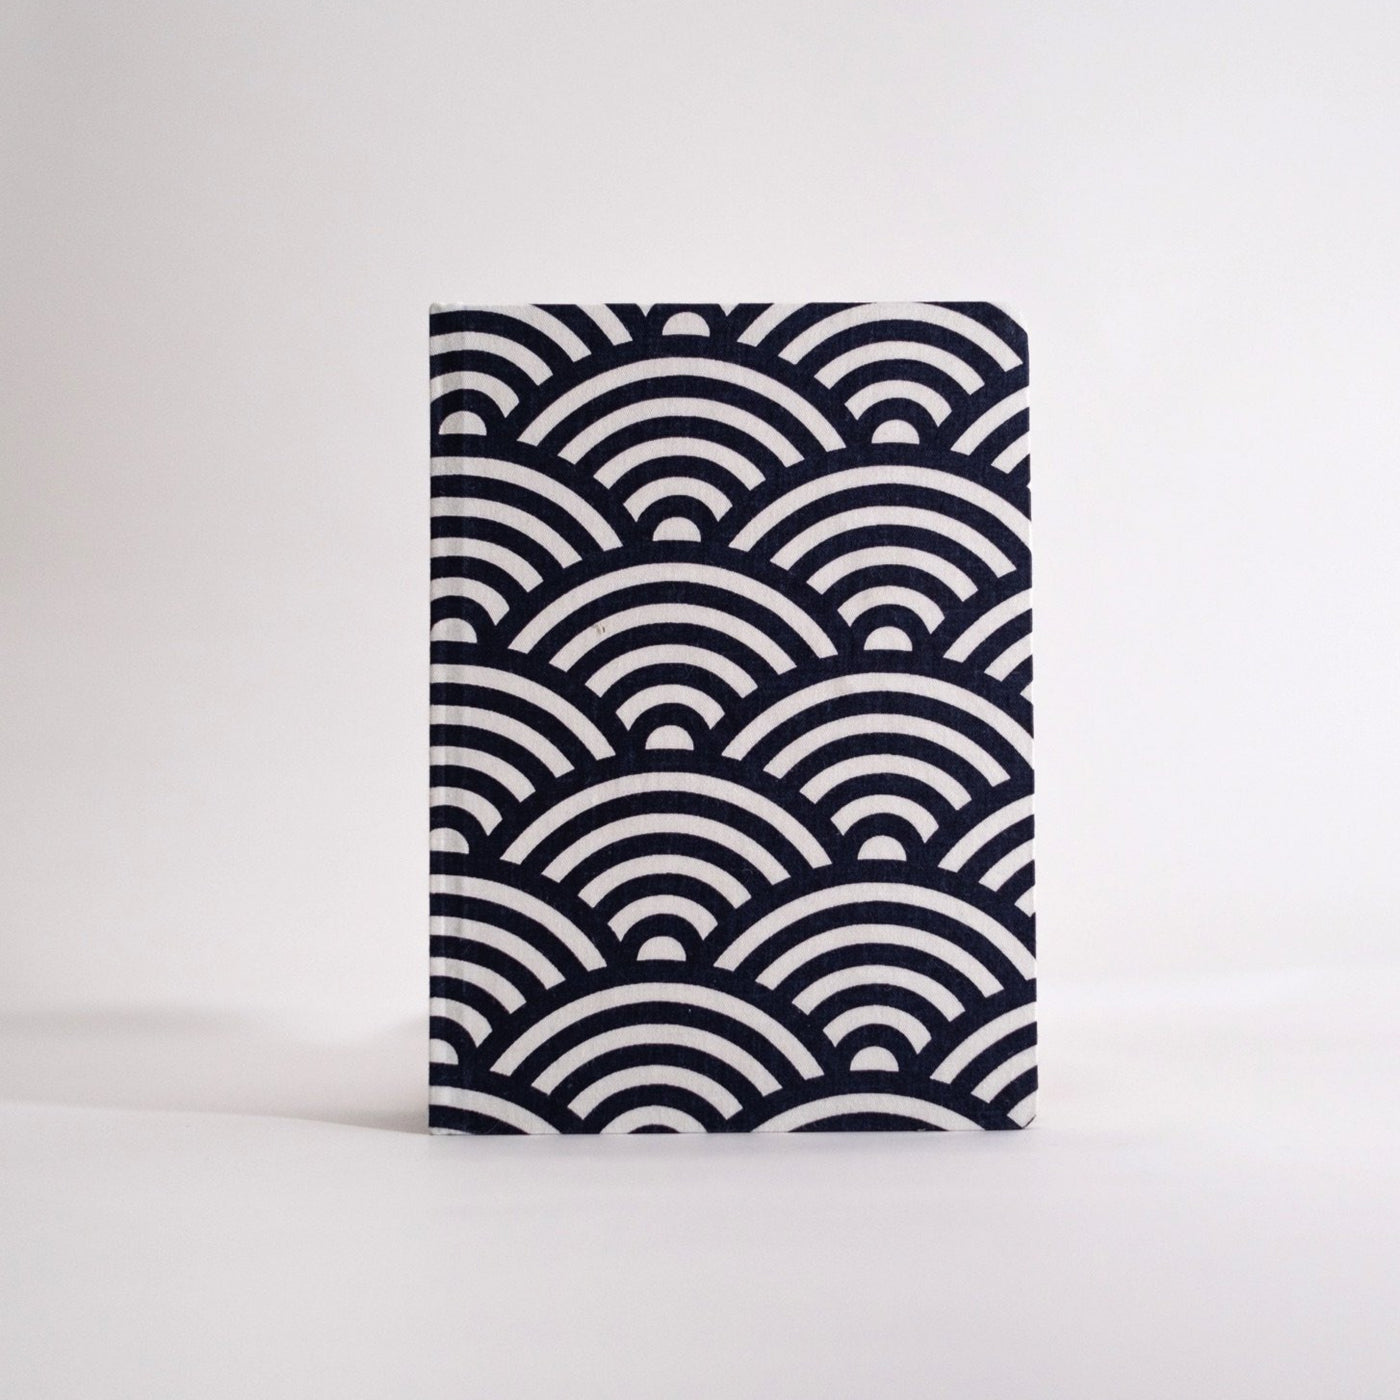 Handbound Journal - Fabric Bound (B&W)